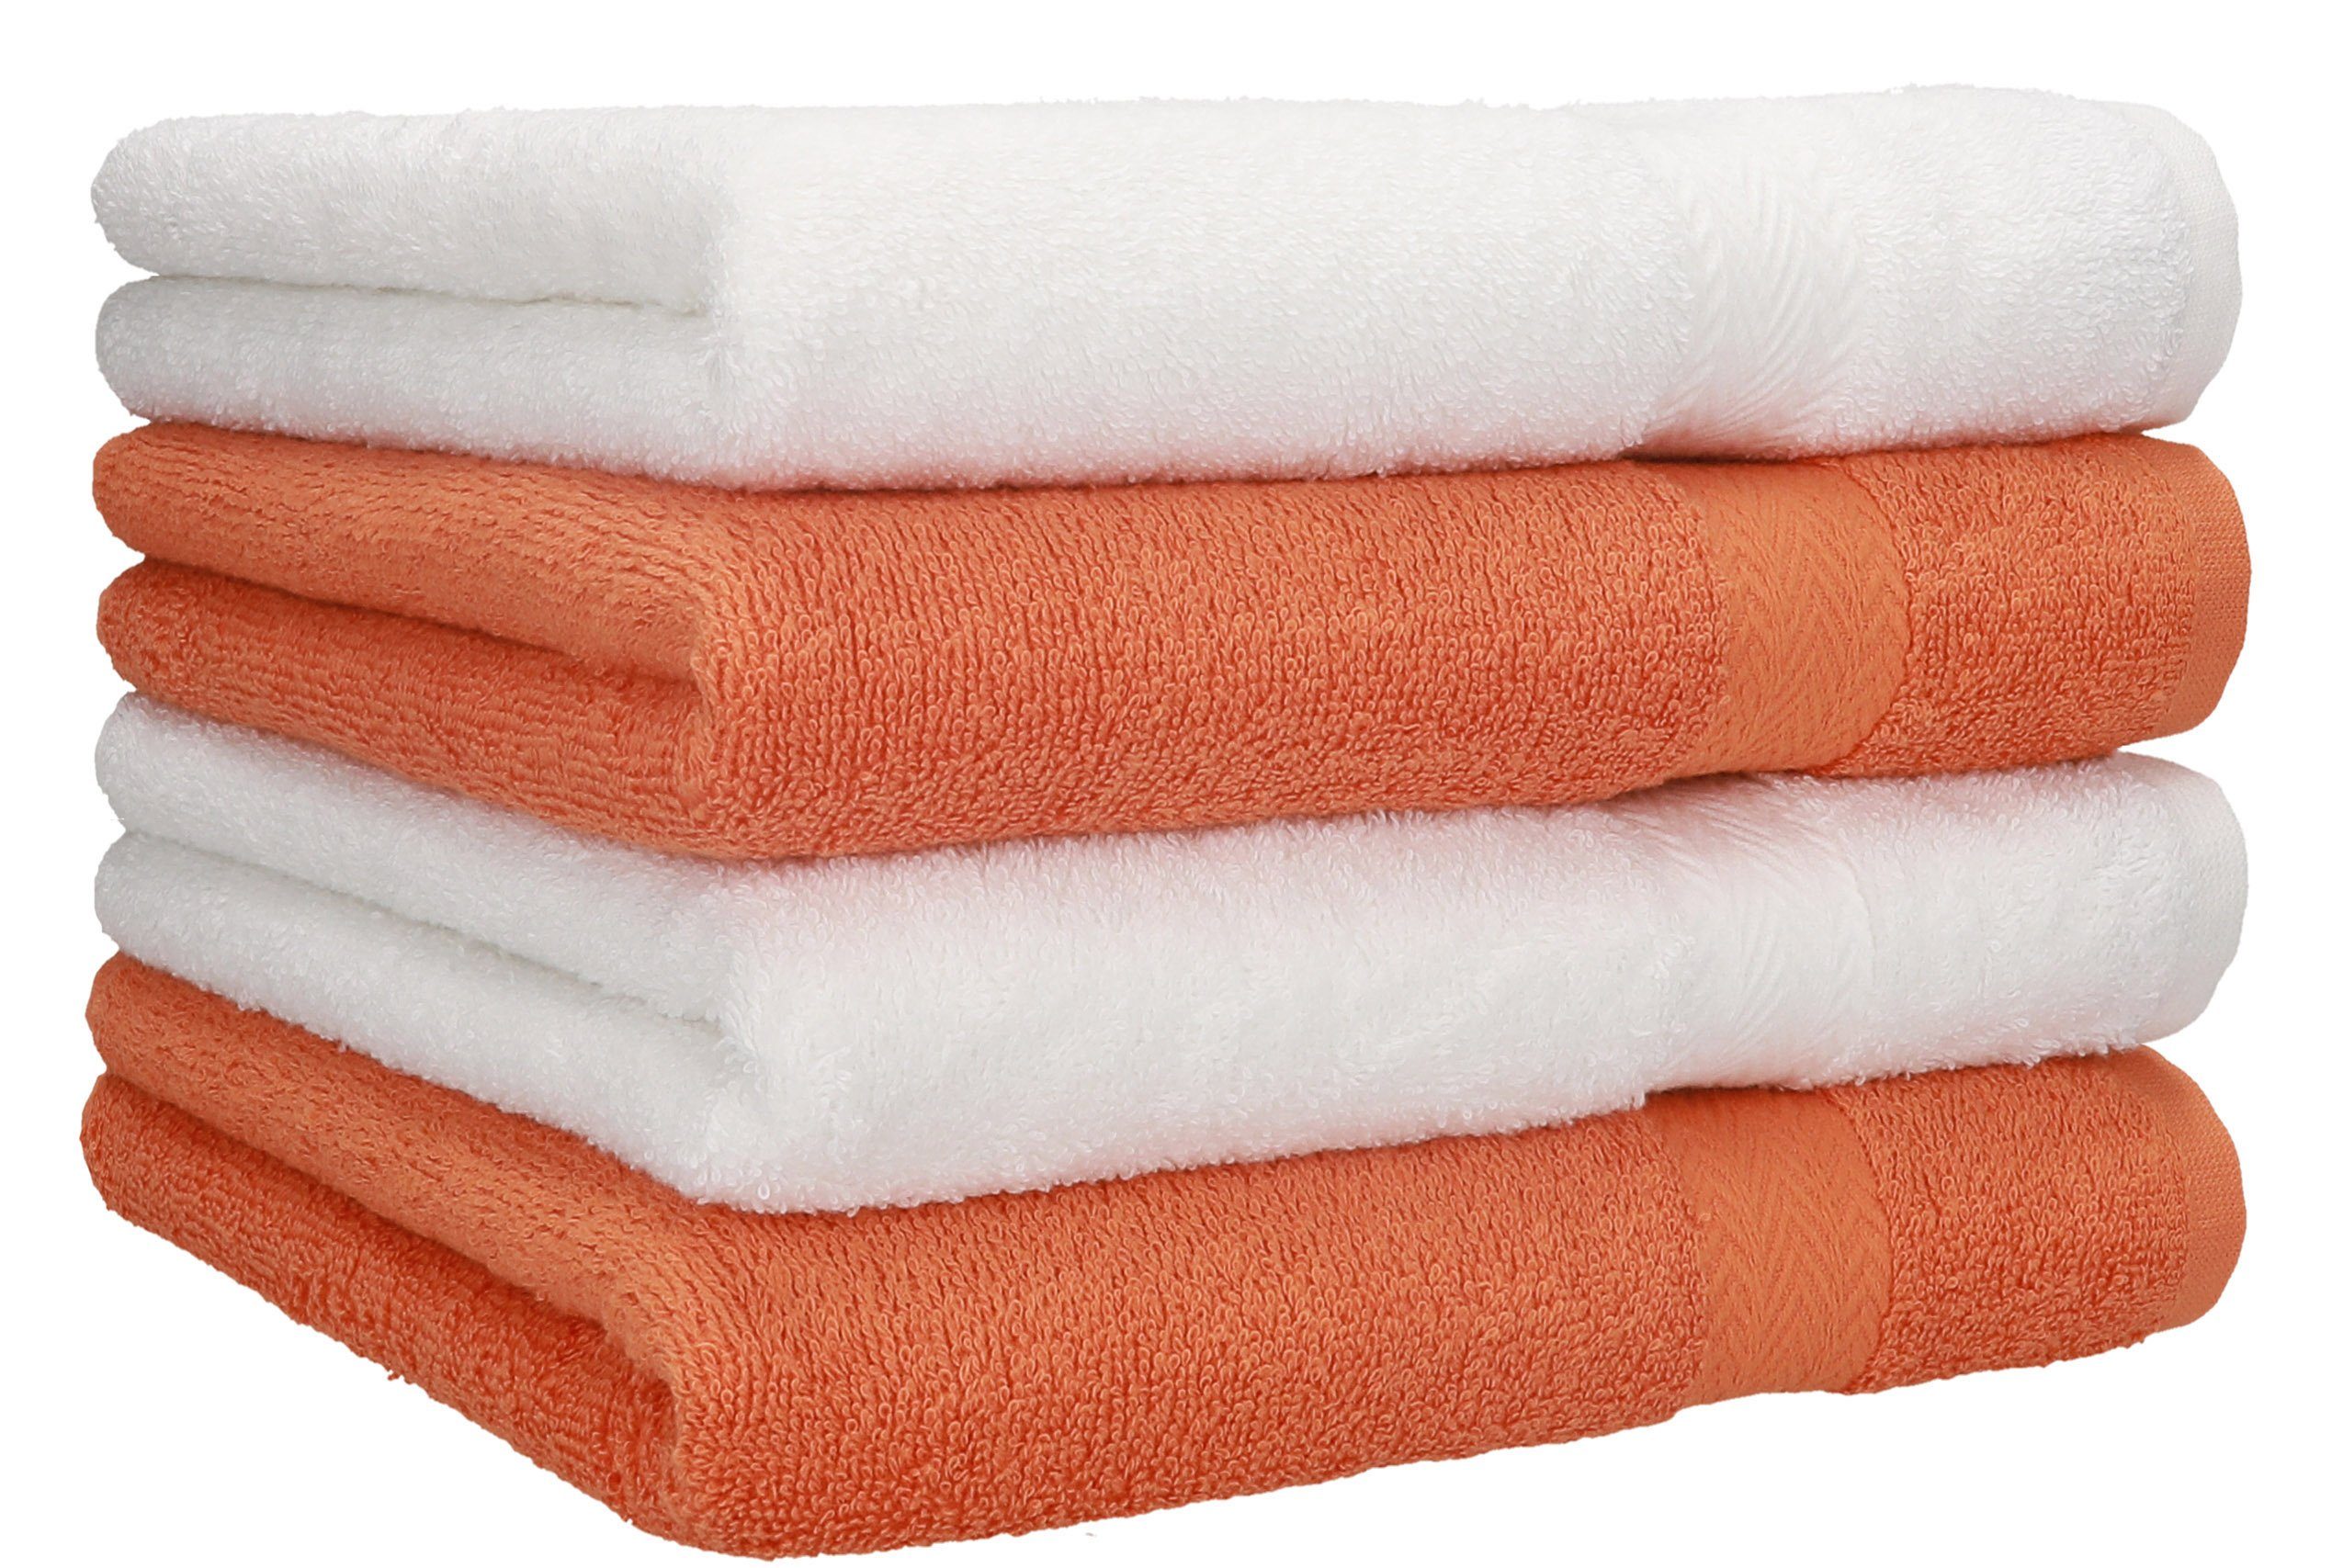 Betz Handtücher 4 Stück Handtücher Premium 4 Handtücher Farbe weiß und orange, 100% Baumwolle